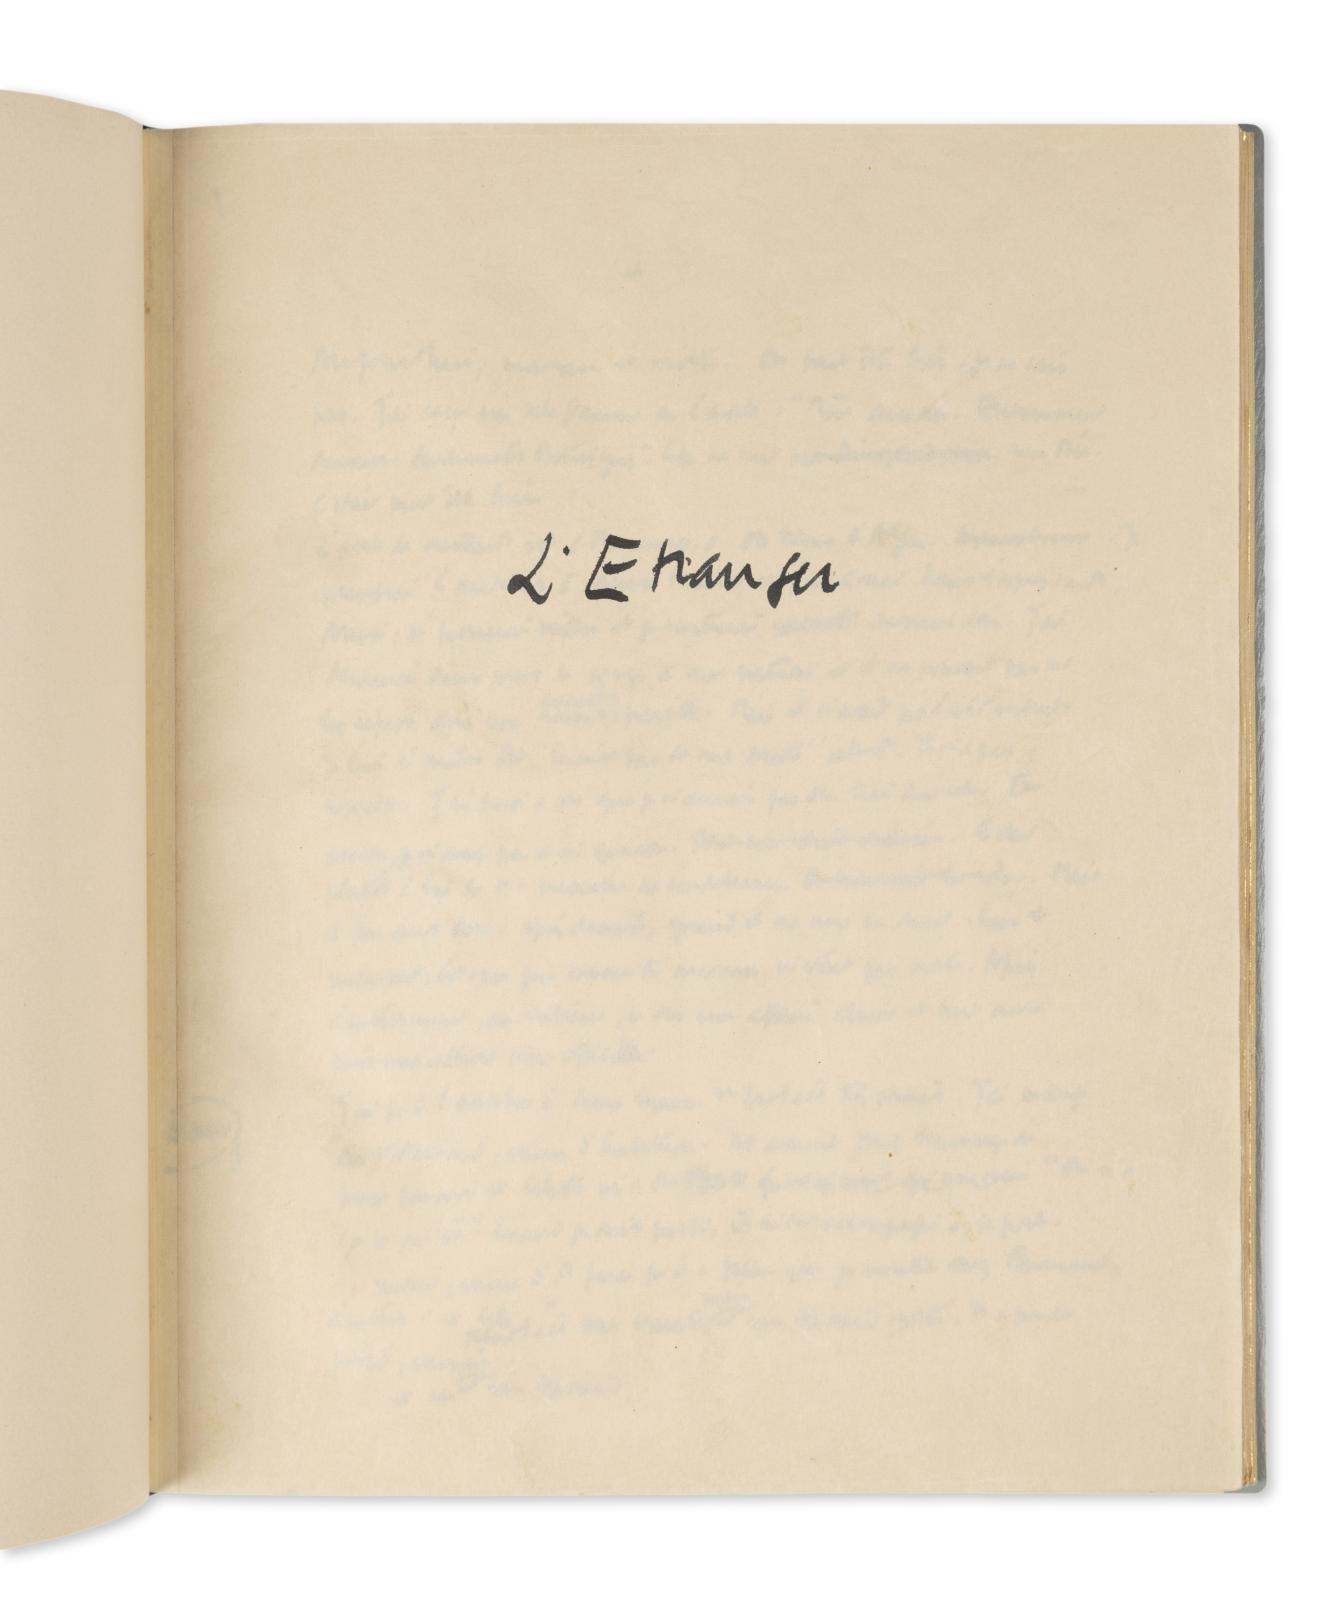 Le mystérieux manuscrit autographe de L'Étranger d'Albert Camus réapparaît sur le marché